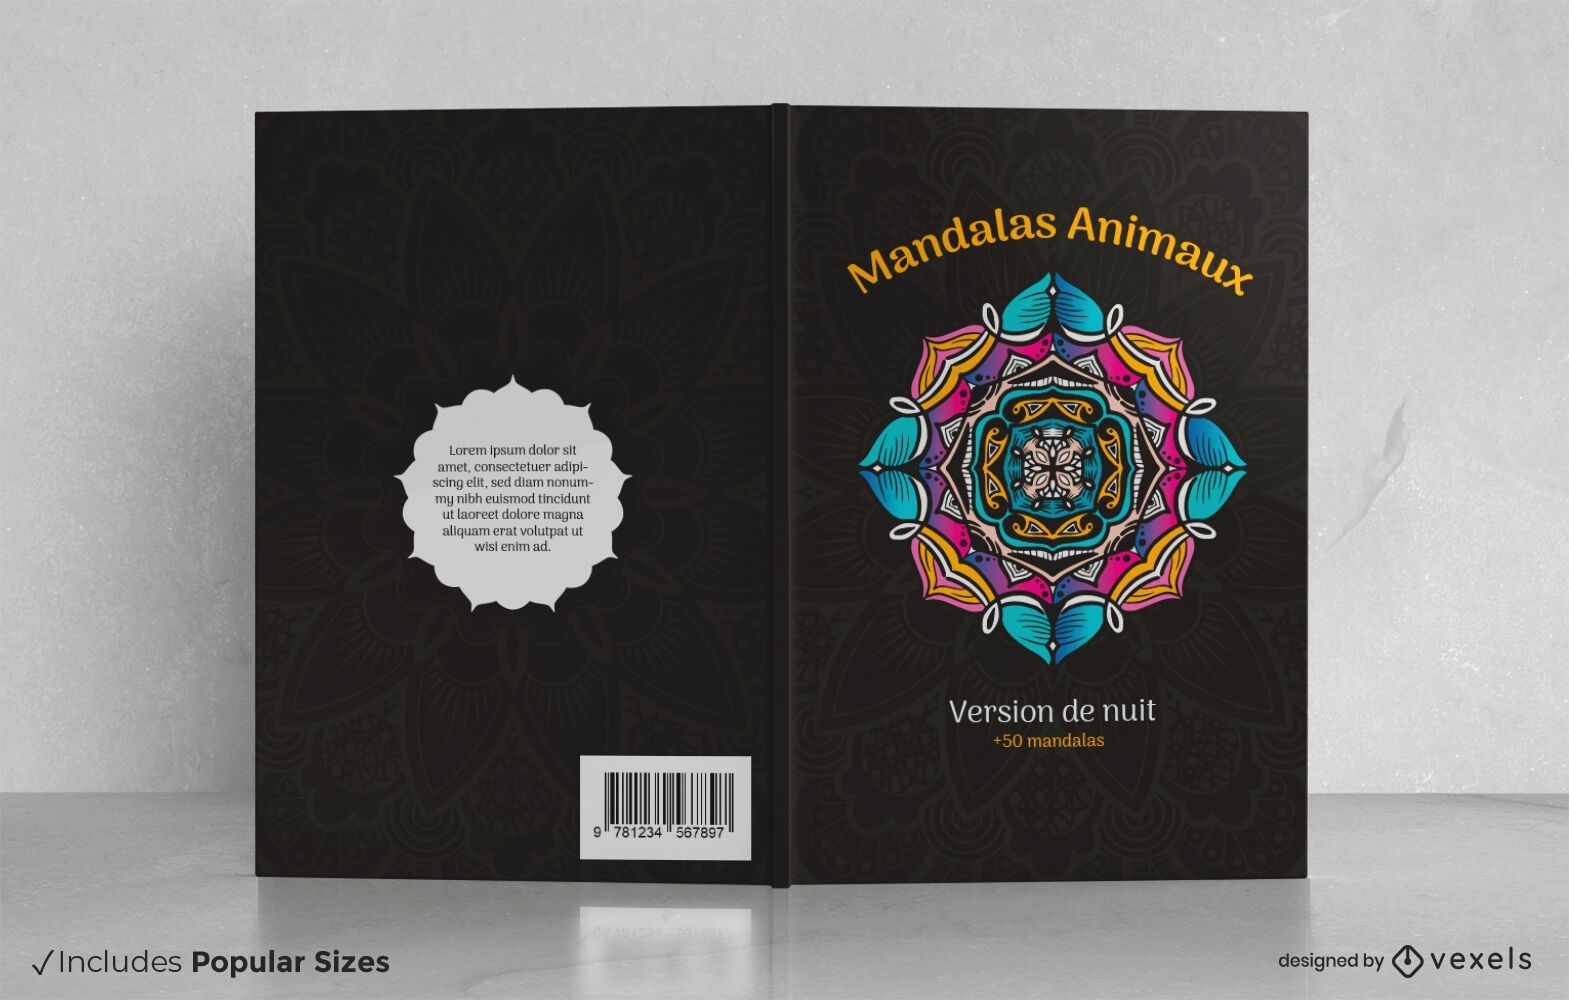 Mandalas animaux book cover design